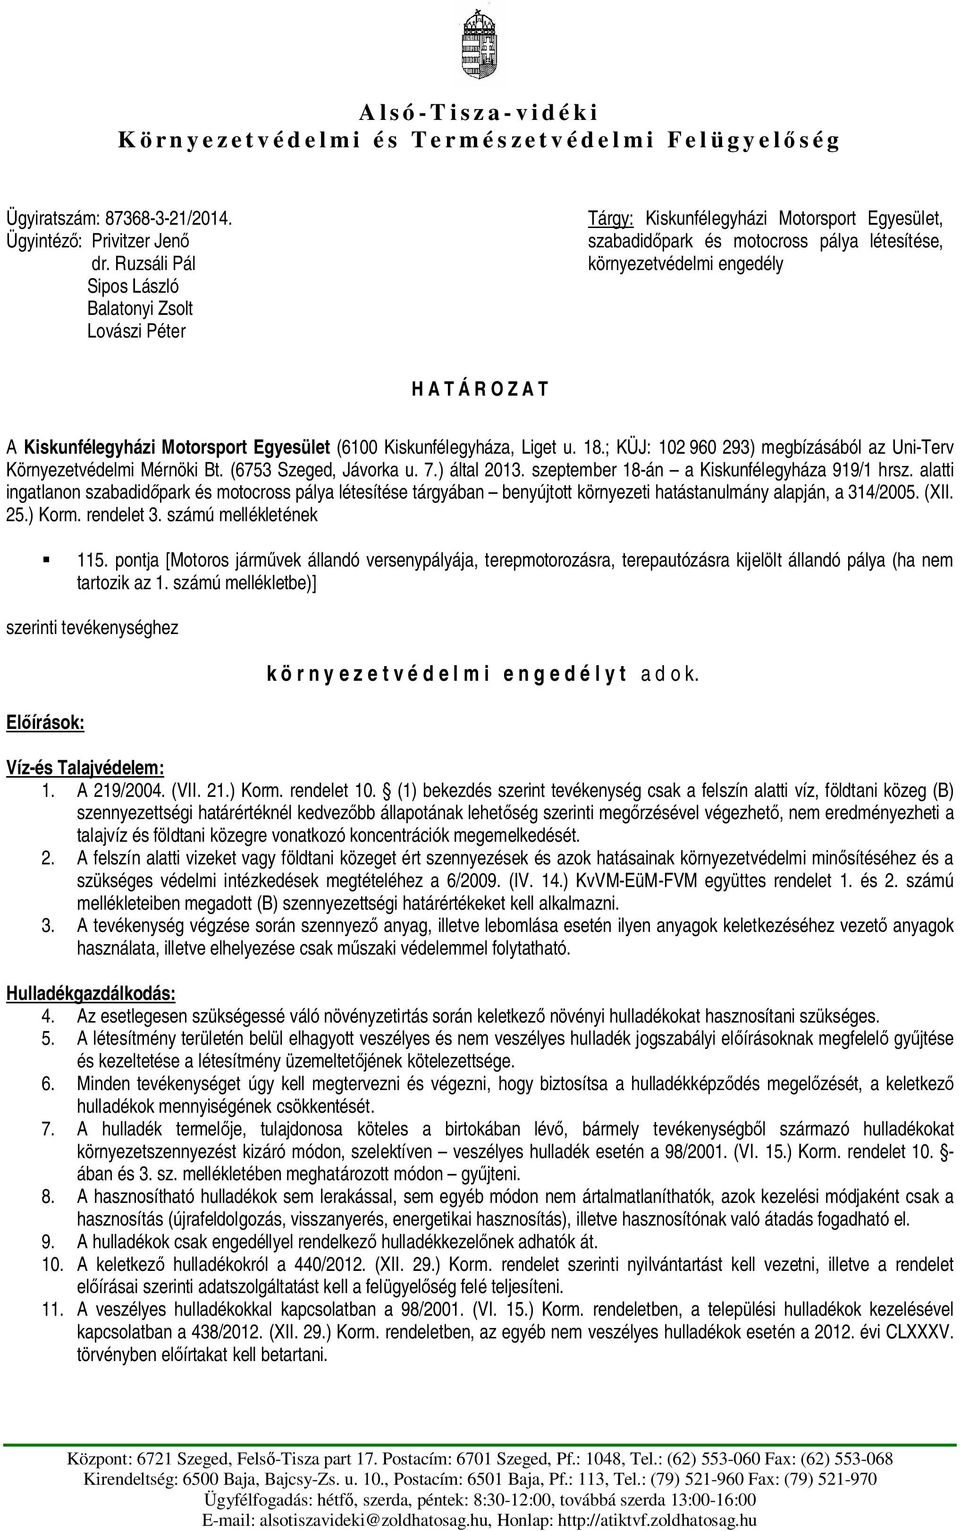 Kiskunfélegyházi Motorsport Egyesület (6100 Kiskunfélegyháza, Liget u. 18.; KÜJ: 102 960 293) megbízásából az Uni-Terv Környezetvédelmi Mérnöki Bt. (6753 Szeged, Jávorka u. 7.) által 2013.